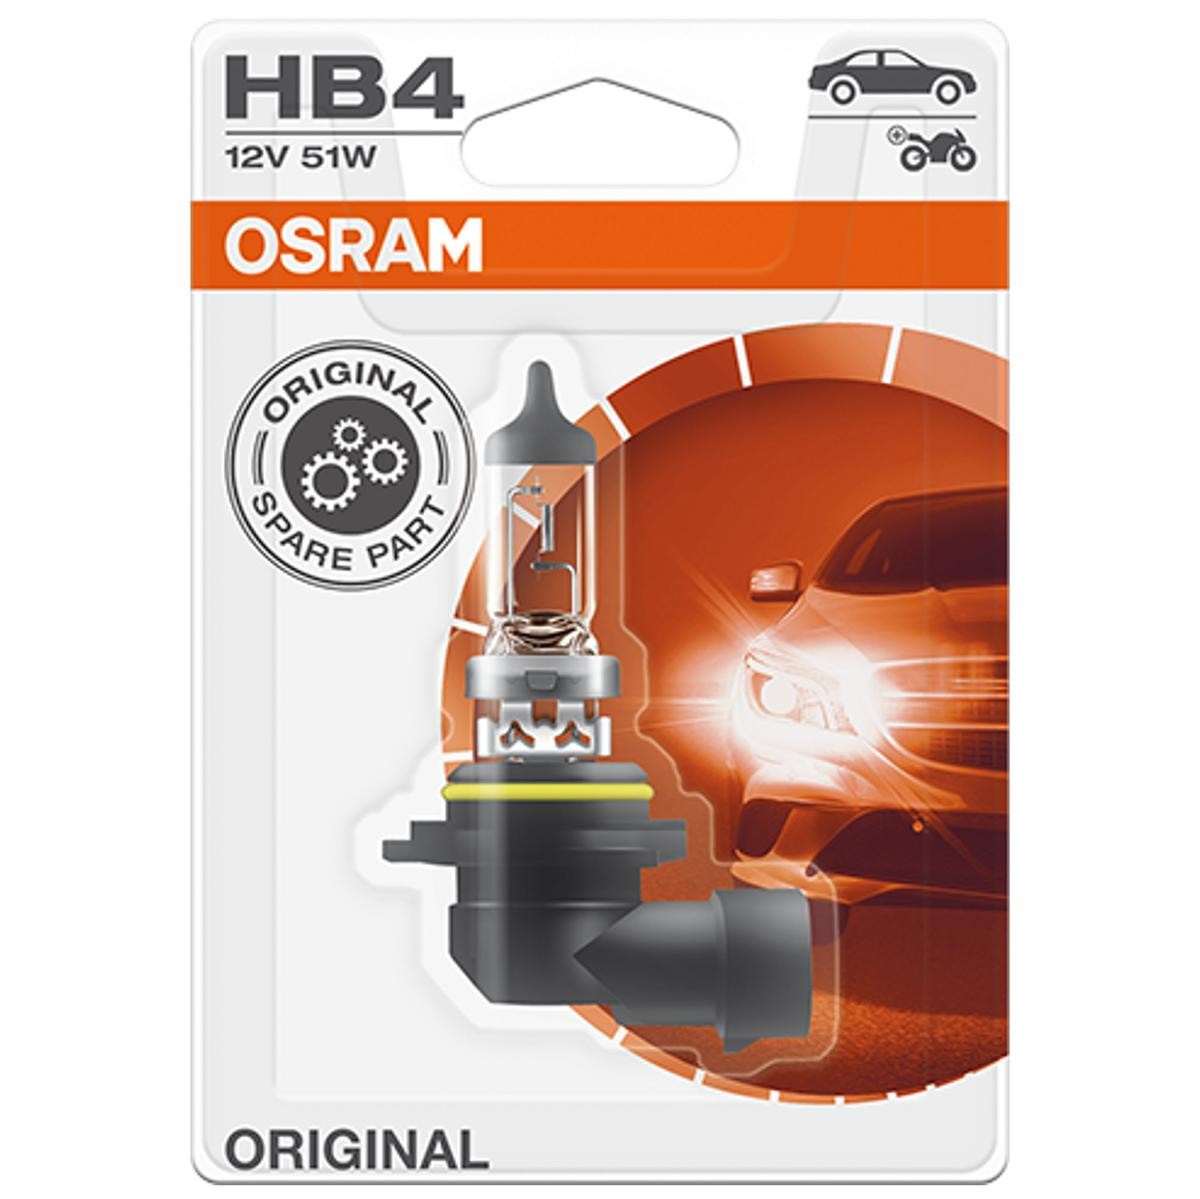 Angebot1 Glühlampe OSRAM HB4 12V 51W 